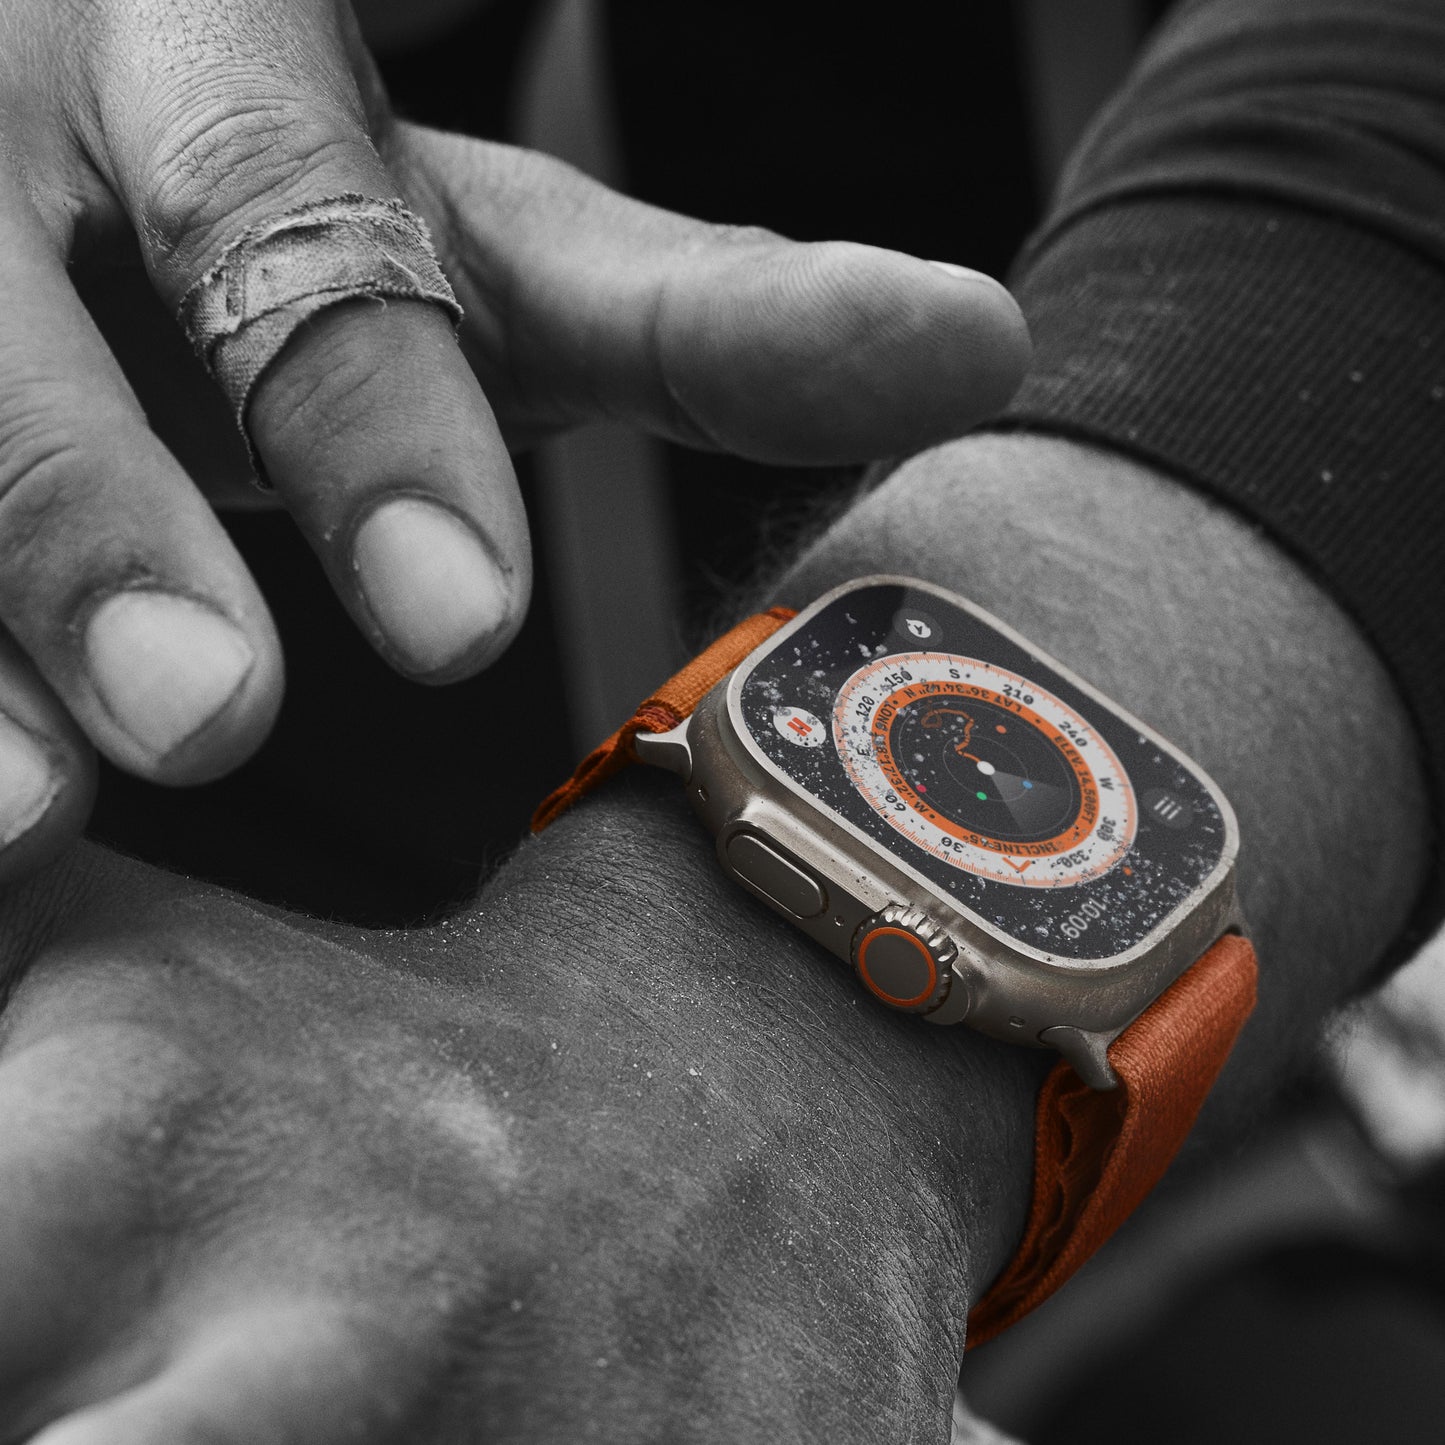 ساعة Apple Watch Ultra GPS + شريحة، قاعدة تيتانيوم بحجم 49 ملم مع Loop الباين البرتقالية - L